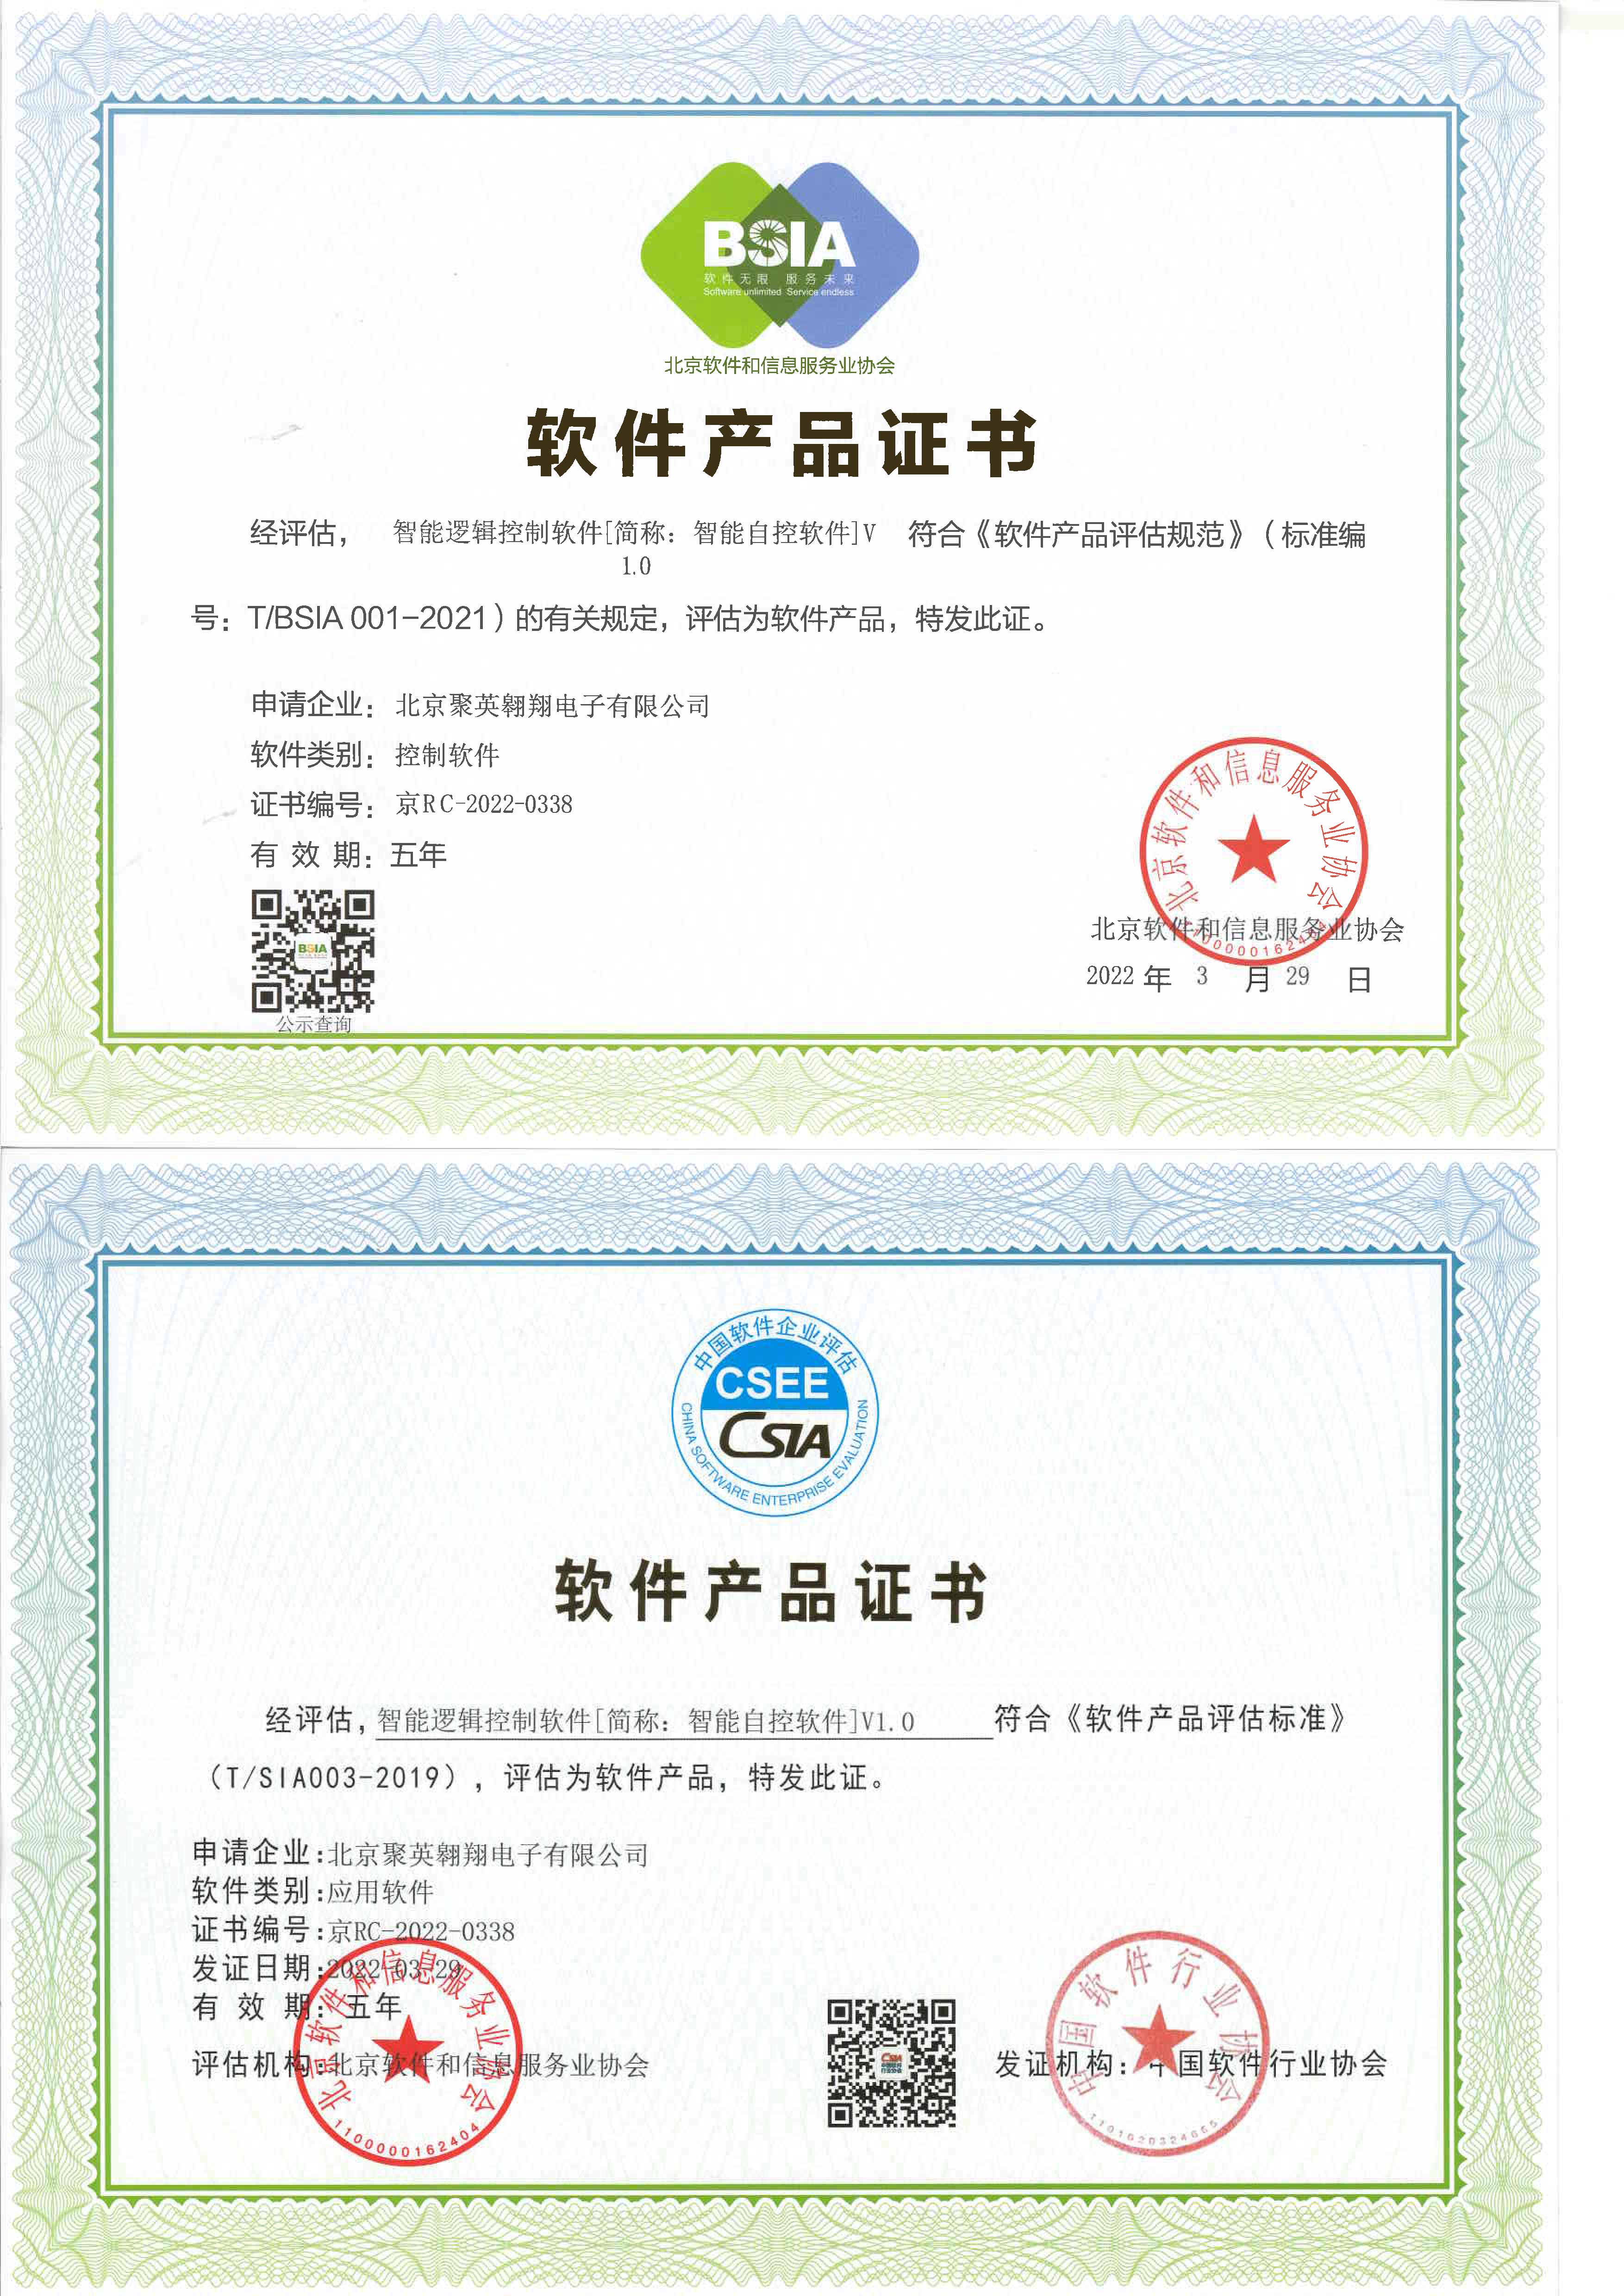 北京聚英翱翔电子有限公司双软证书-1.jpg